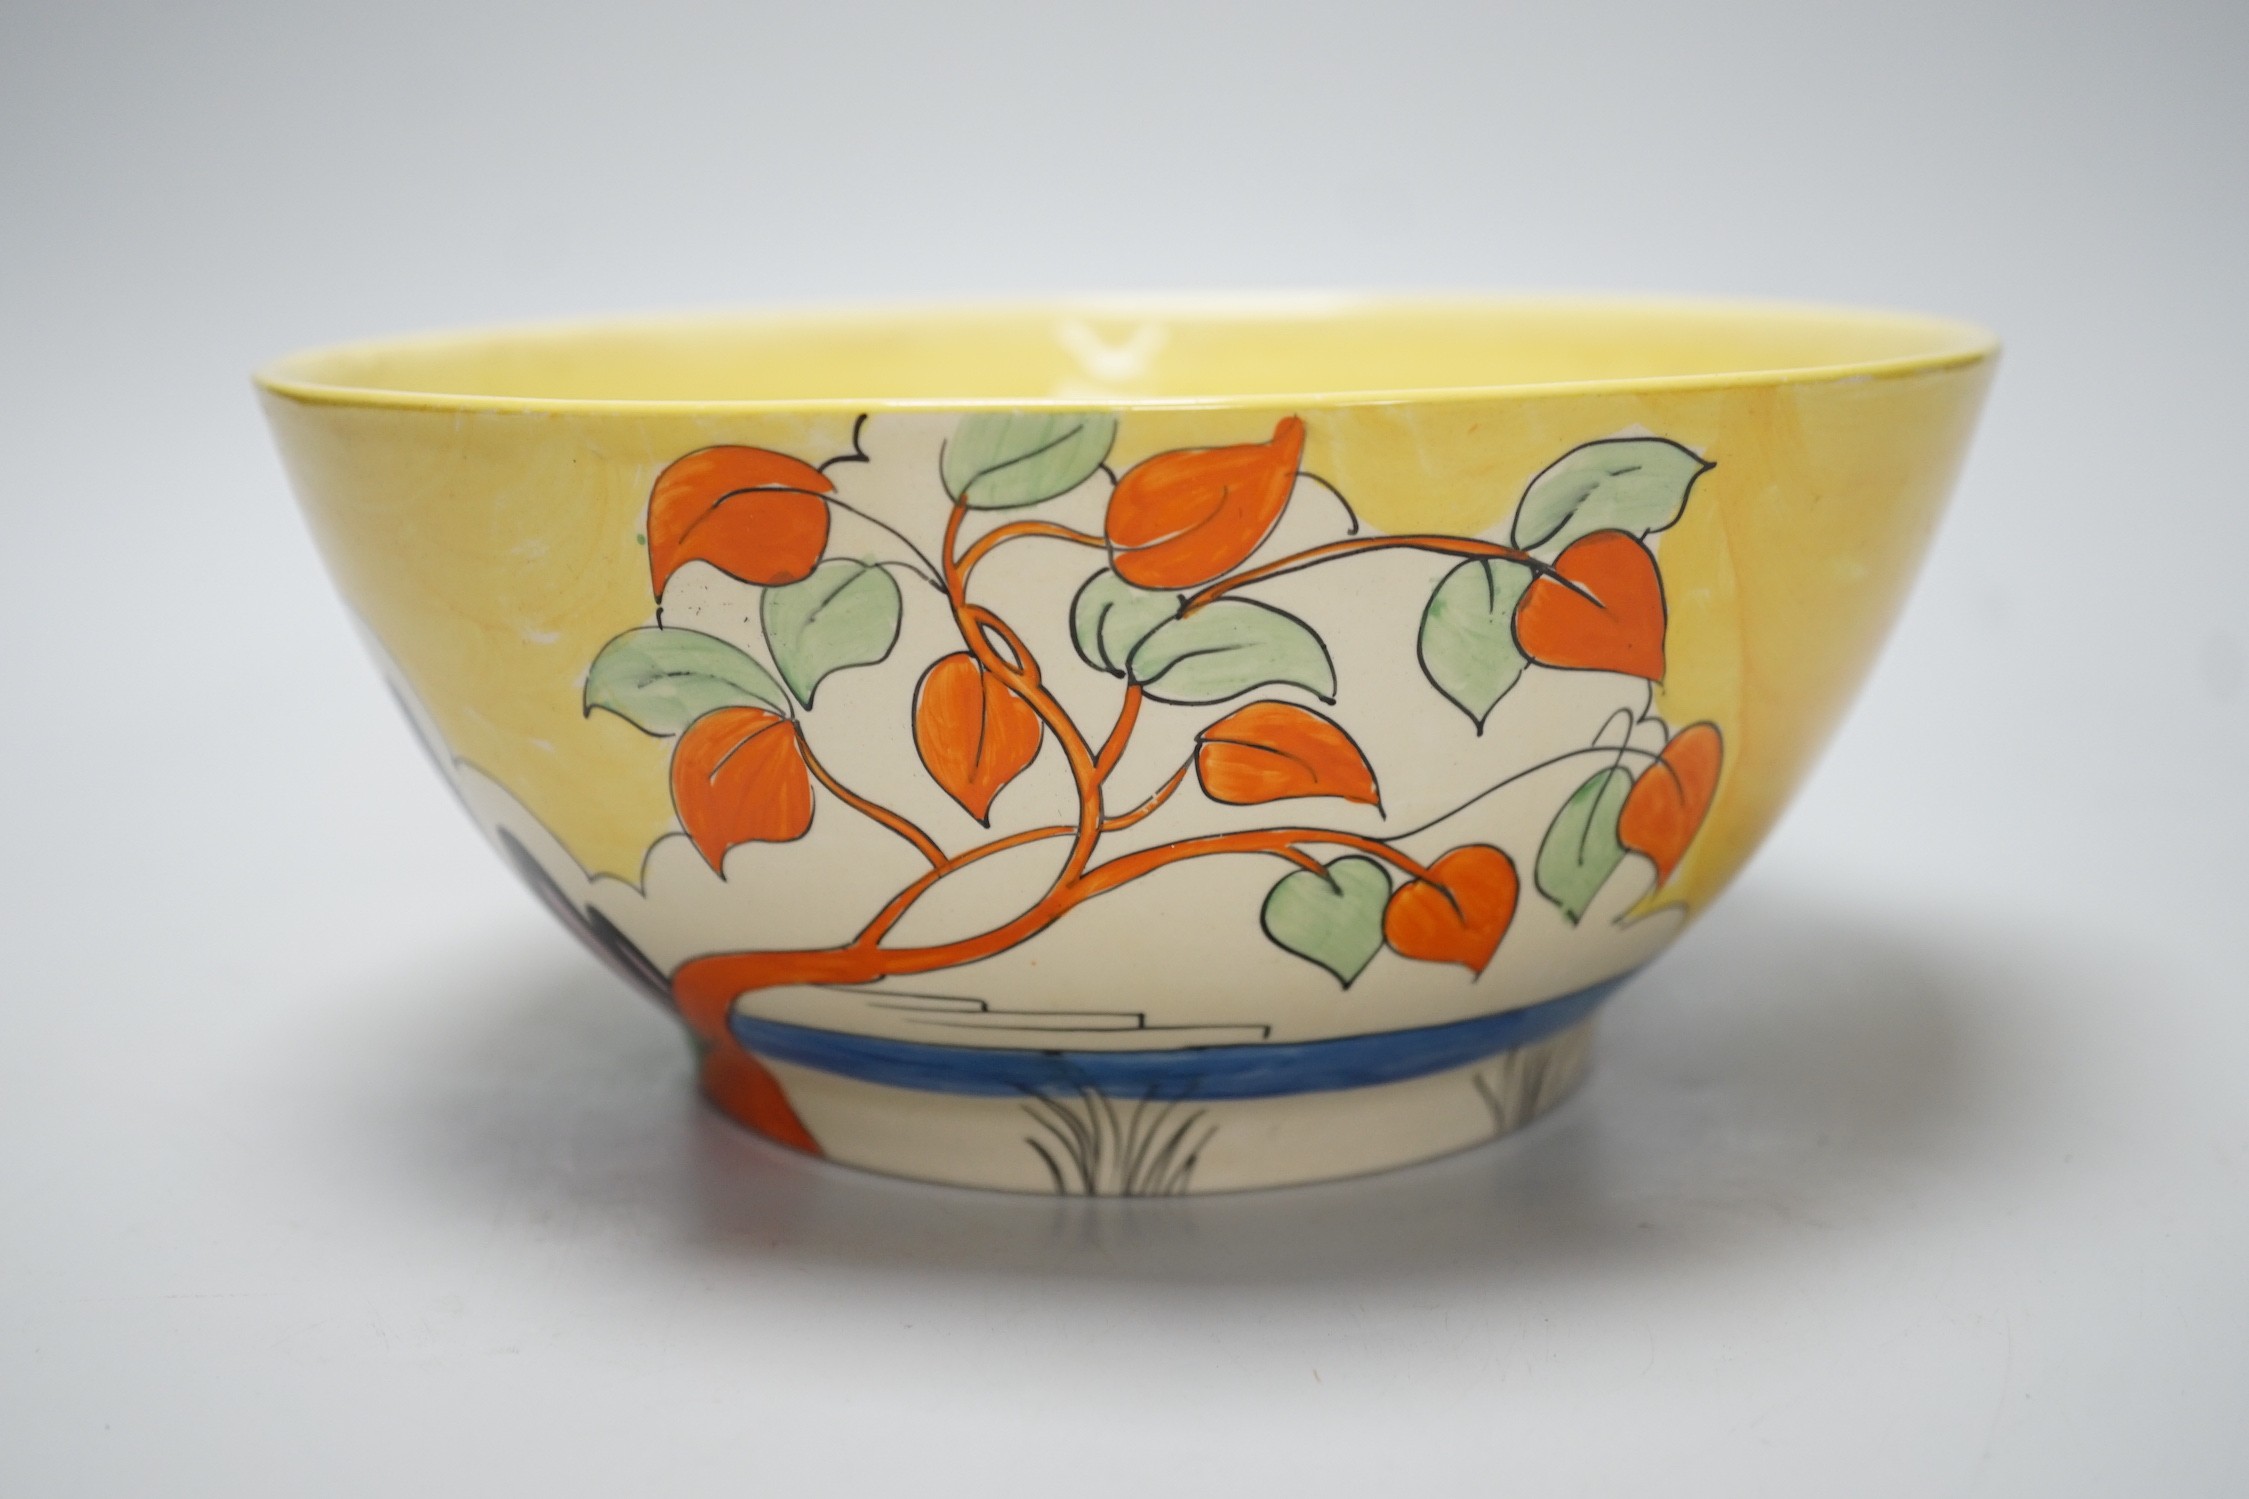 A Clarice Cliff Bizarre bowl, 22cm